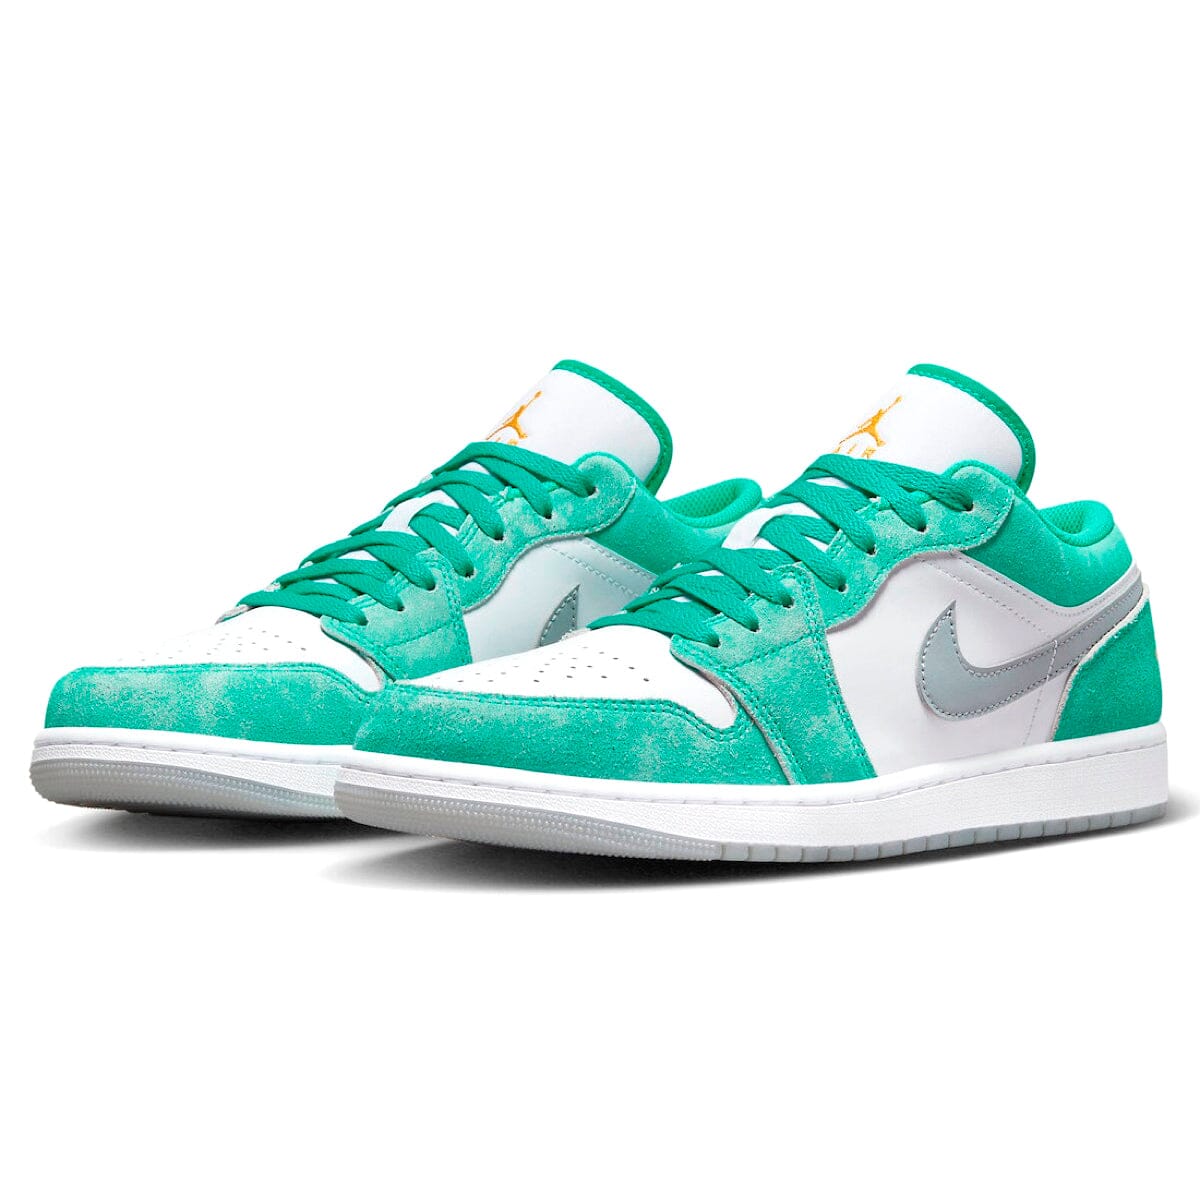 Air Jordan 1 Low New Emerald Blizz Sneakers 